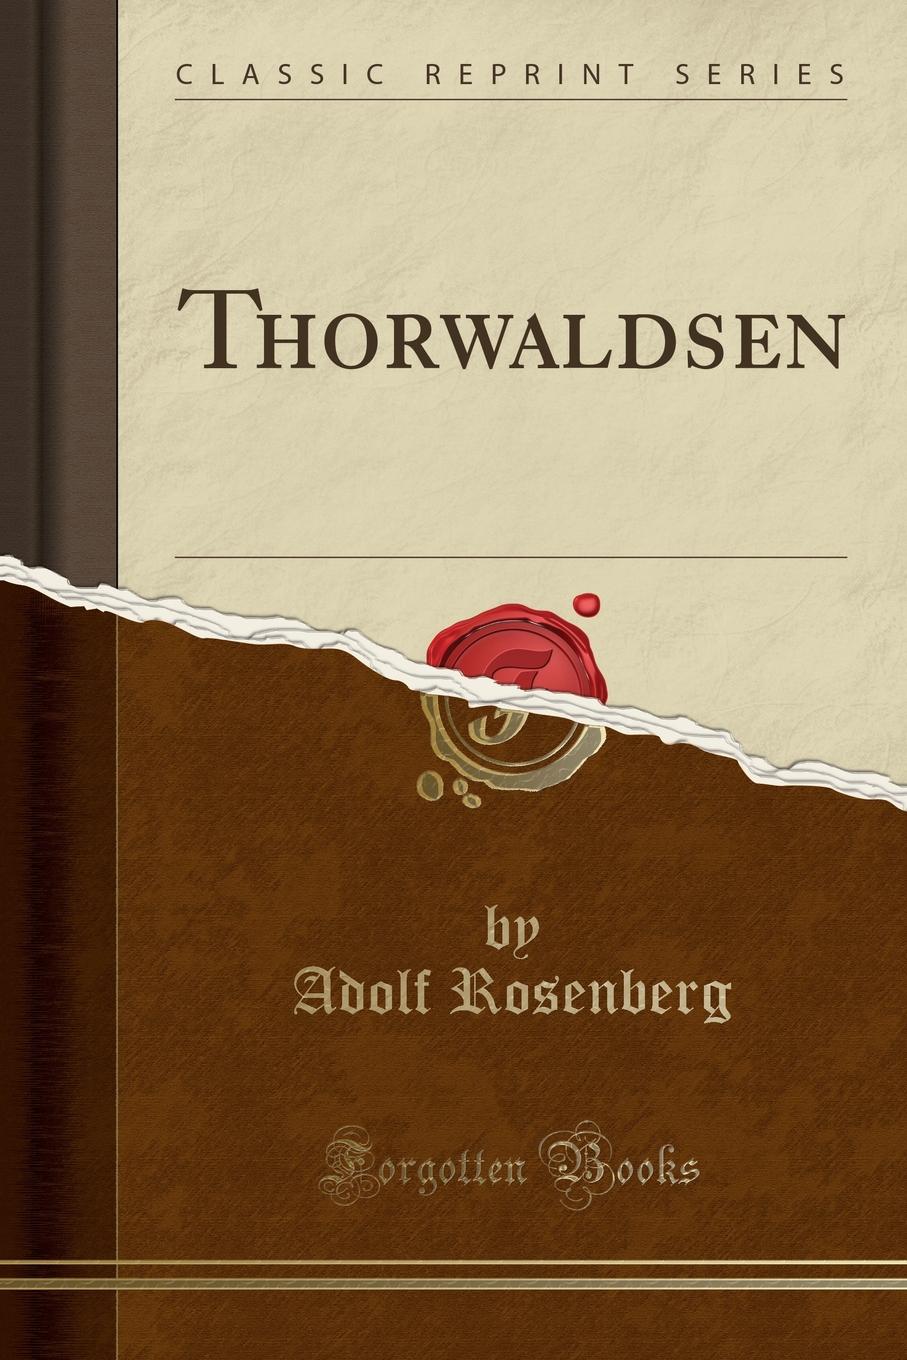 Thorwaldsen (Classic Reprint)